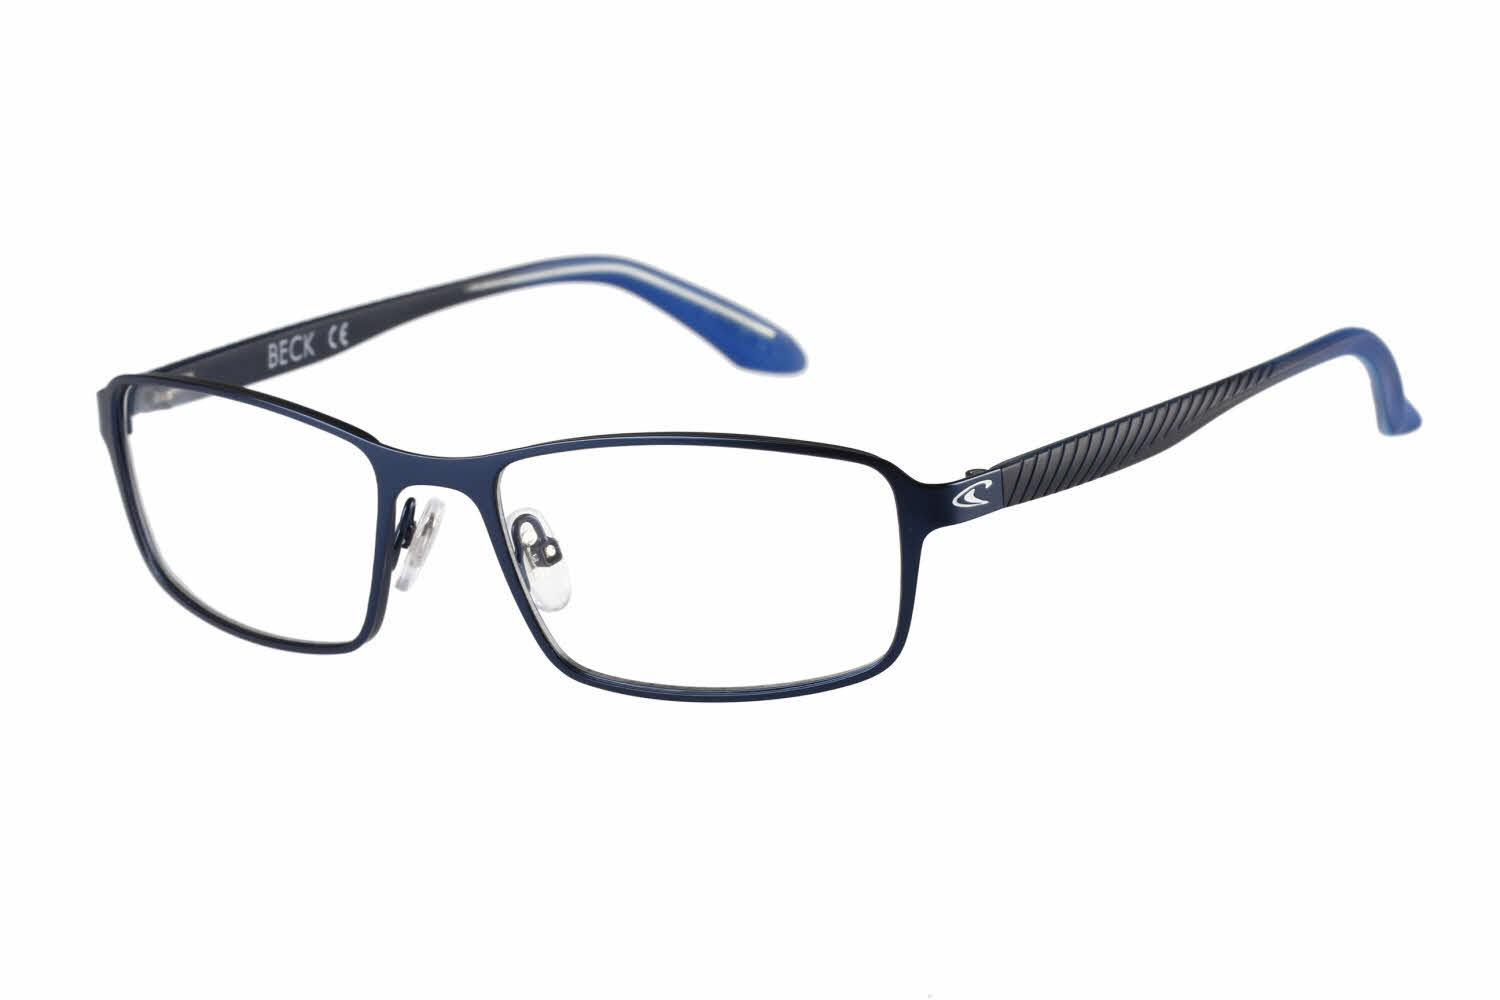 O&#039;Neill Beck Eyeglasses